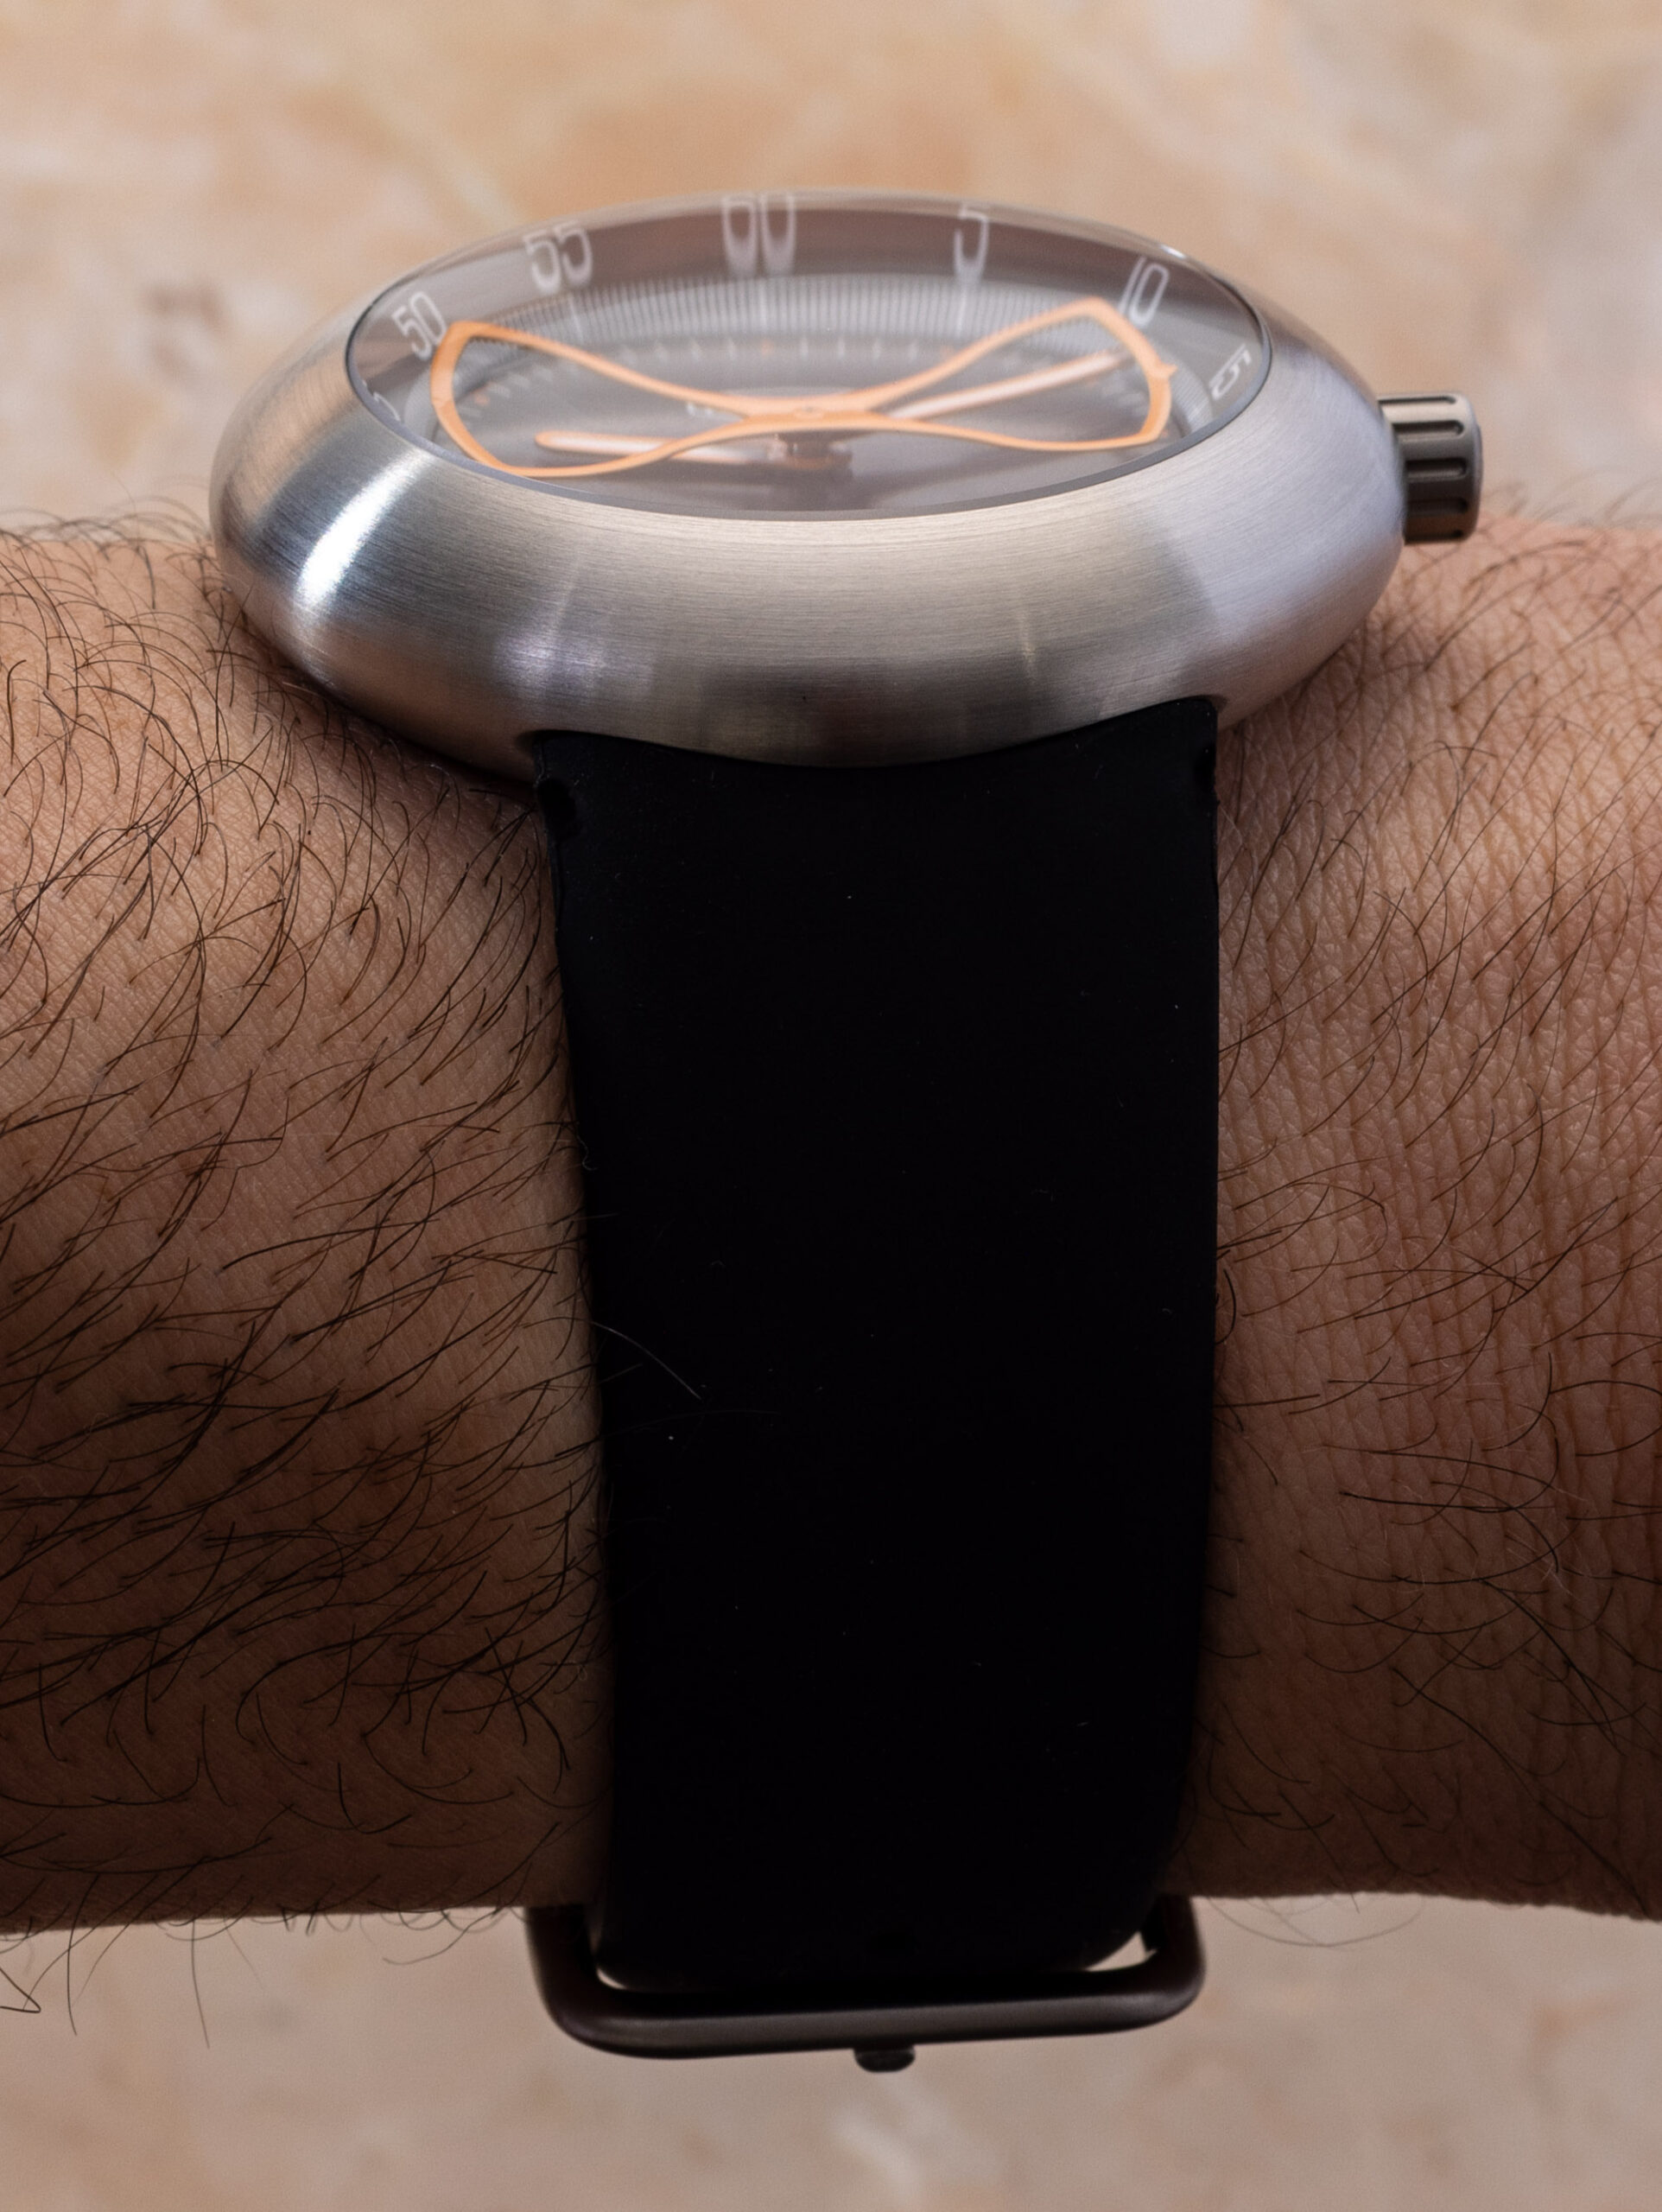 Практический обзор: Песочные часы Ikepod Megapod